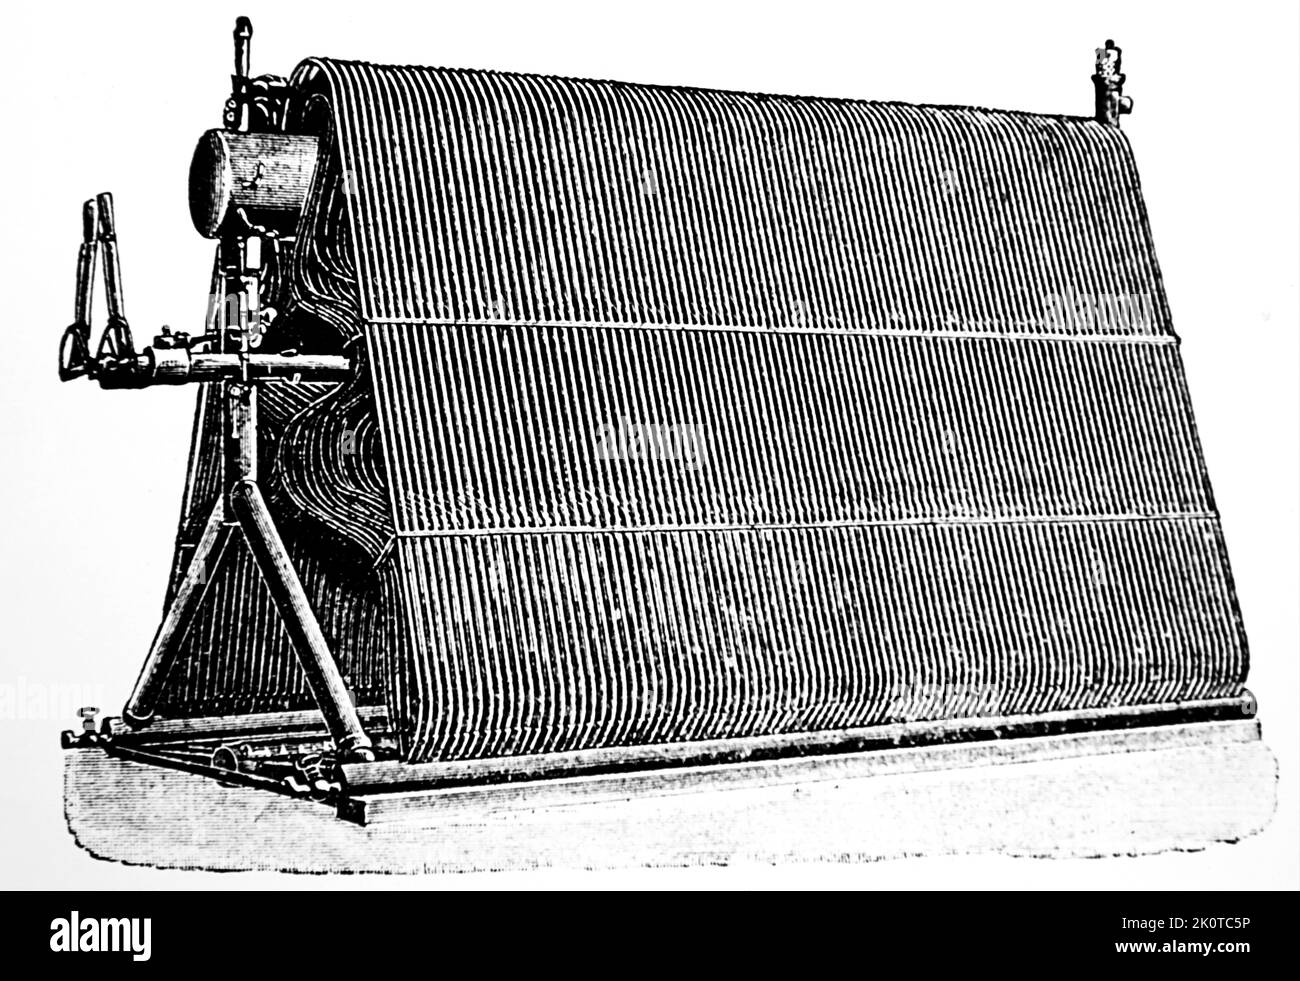 La caldaia a tubo d'acqua di Hiram Maxim della sua macchina volante. Hiram Maxim (1840-1916) inventore britannico. Datato 19th ° secolo Foto Stock